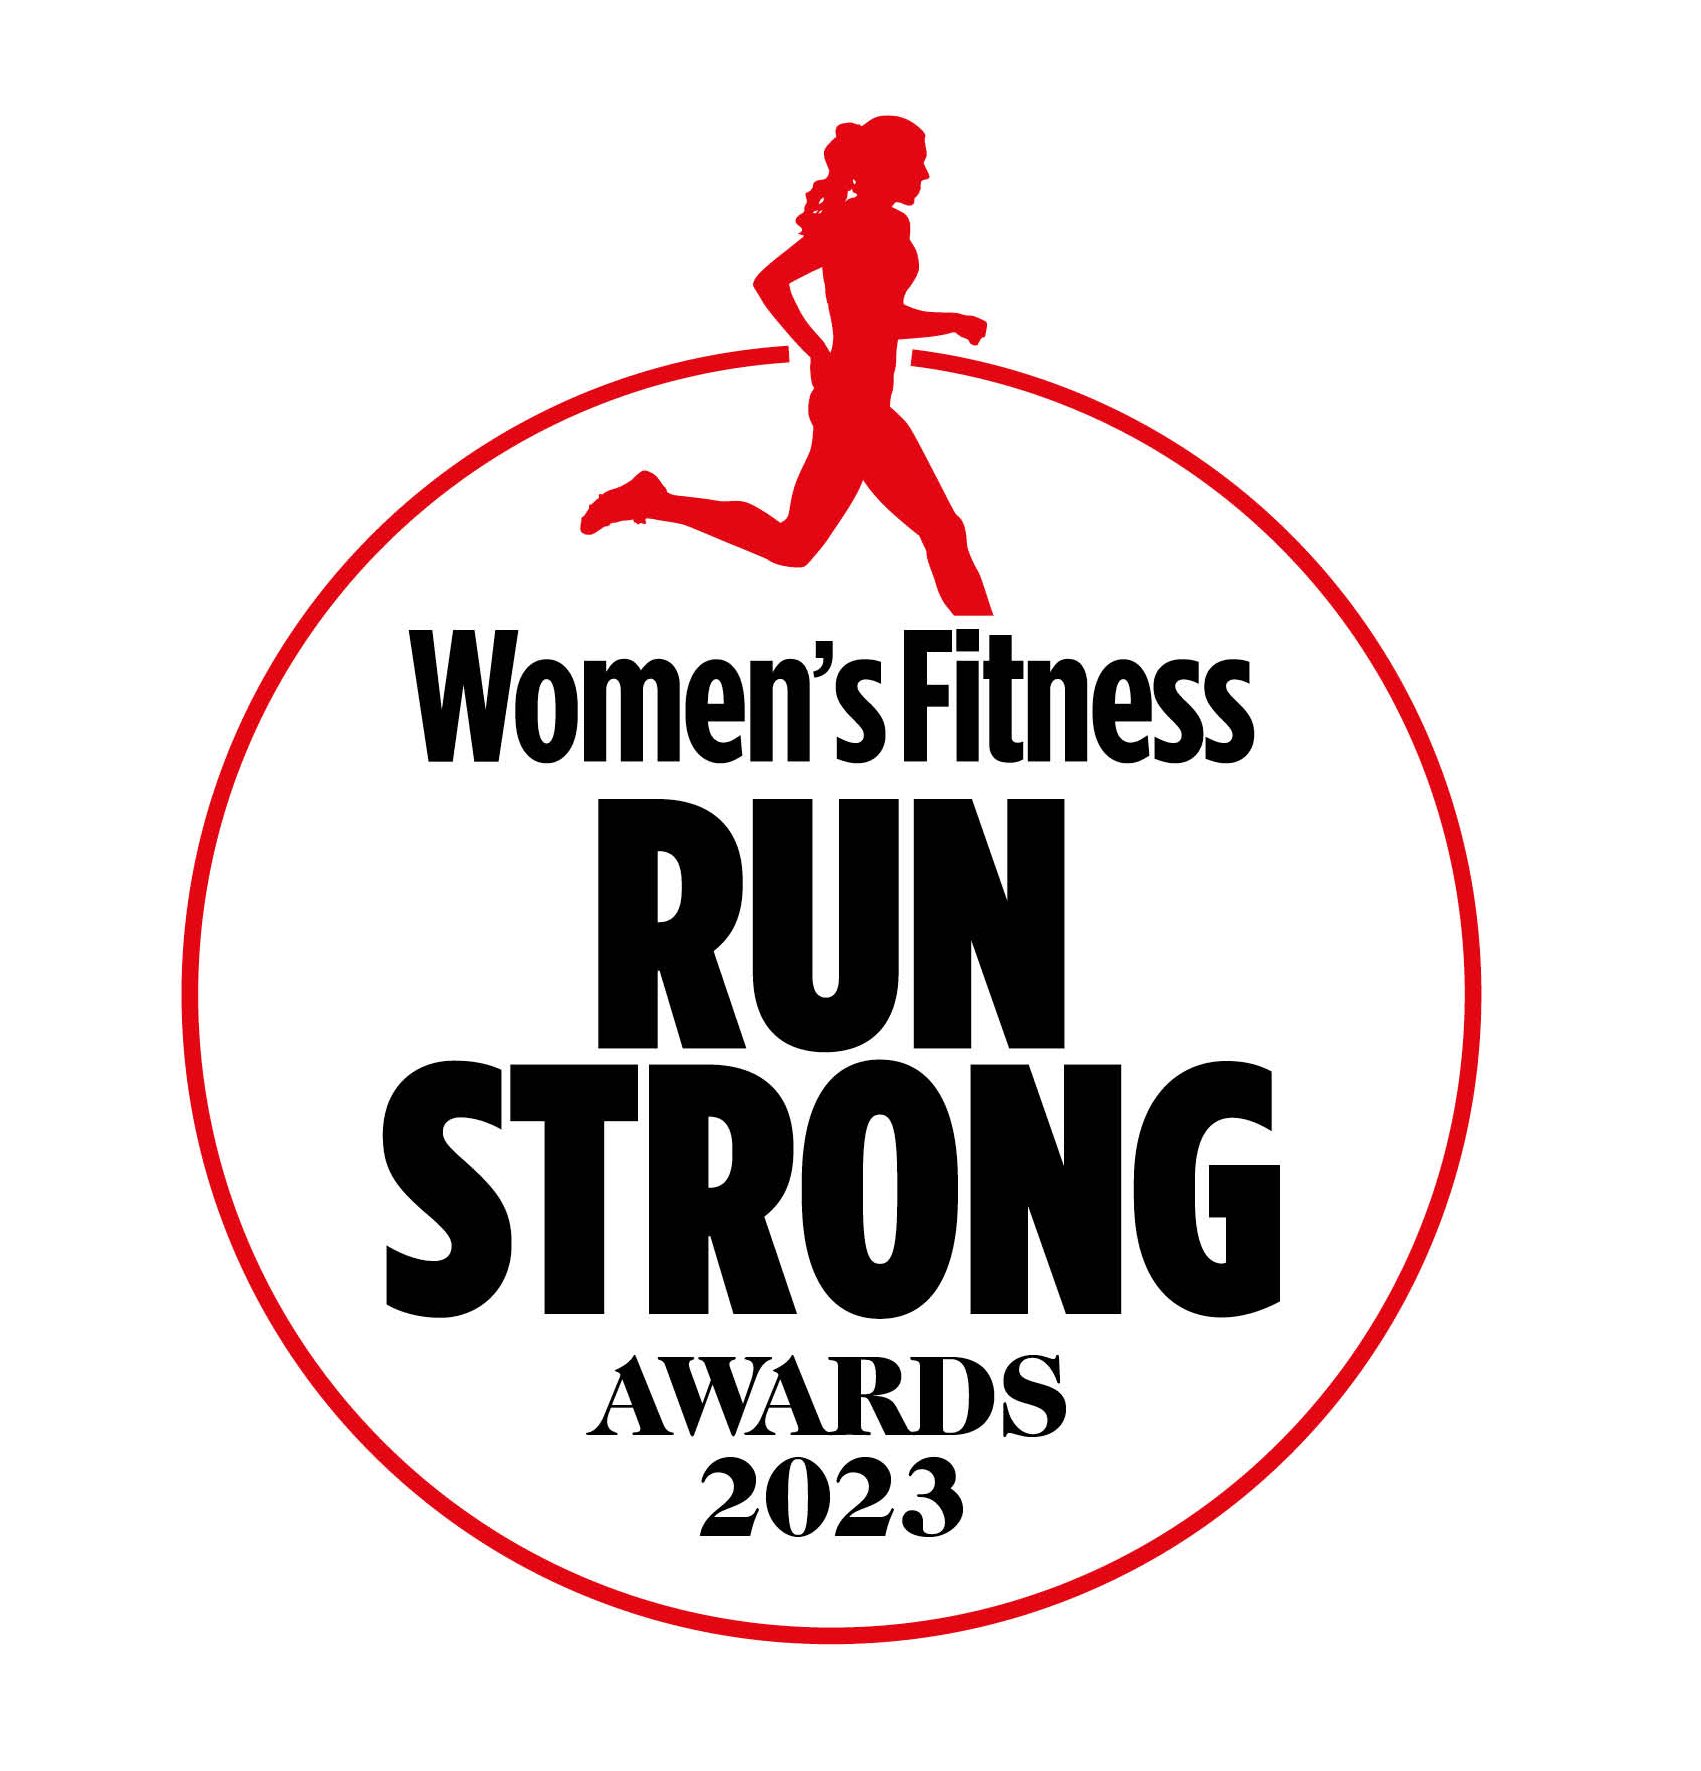 run strong awards logo